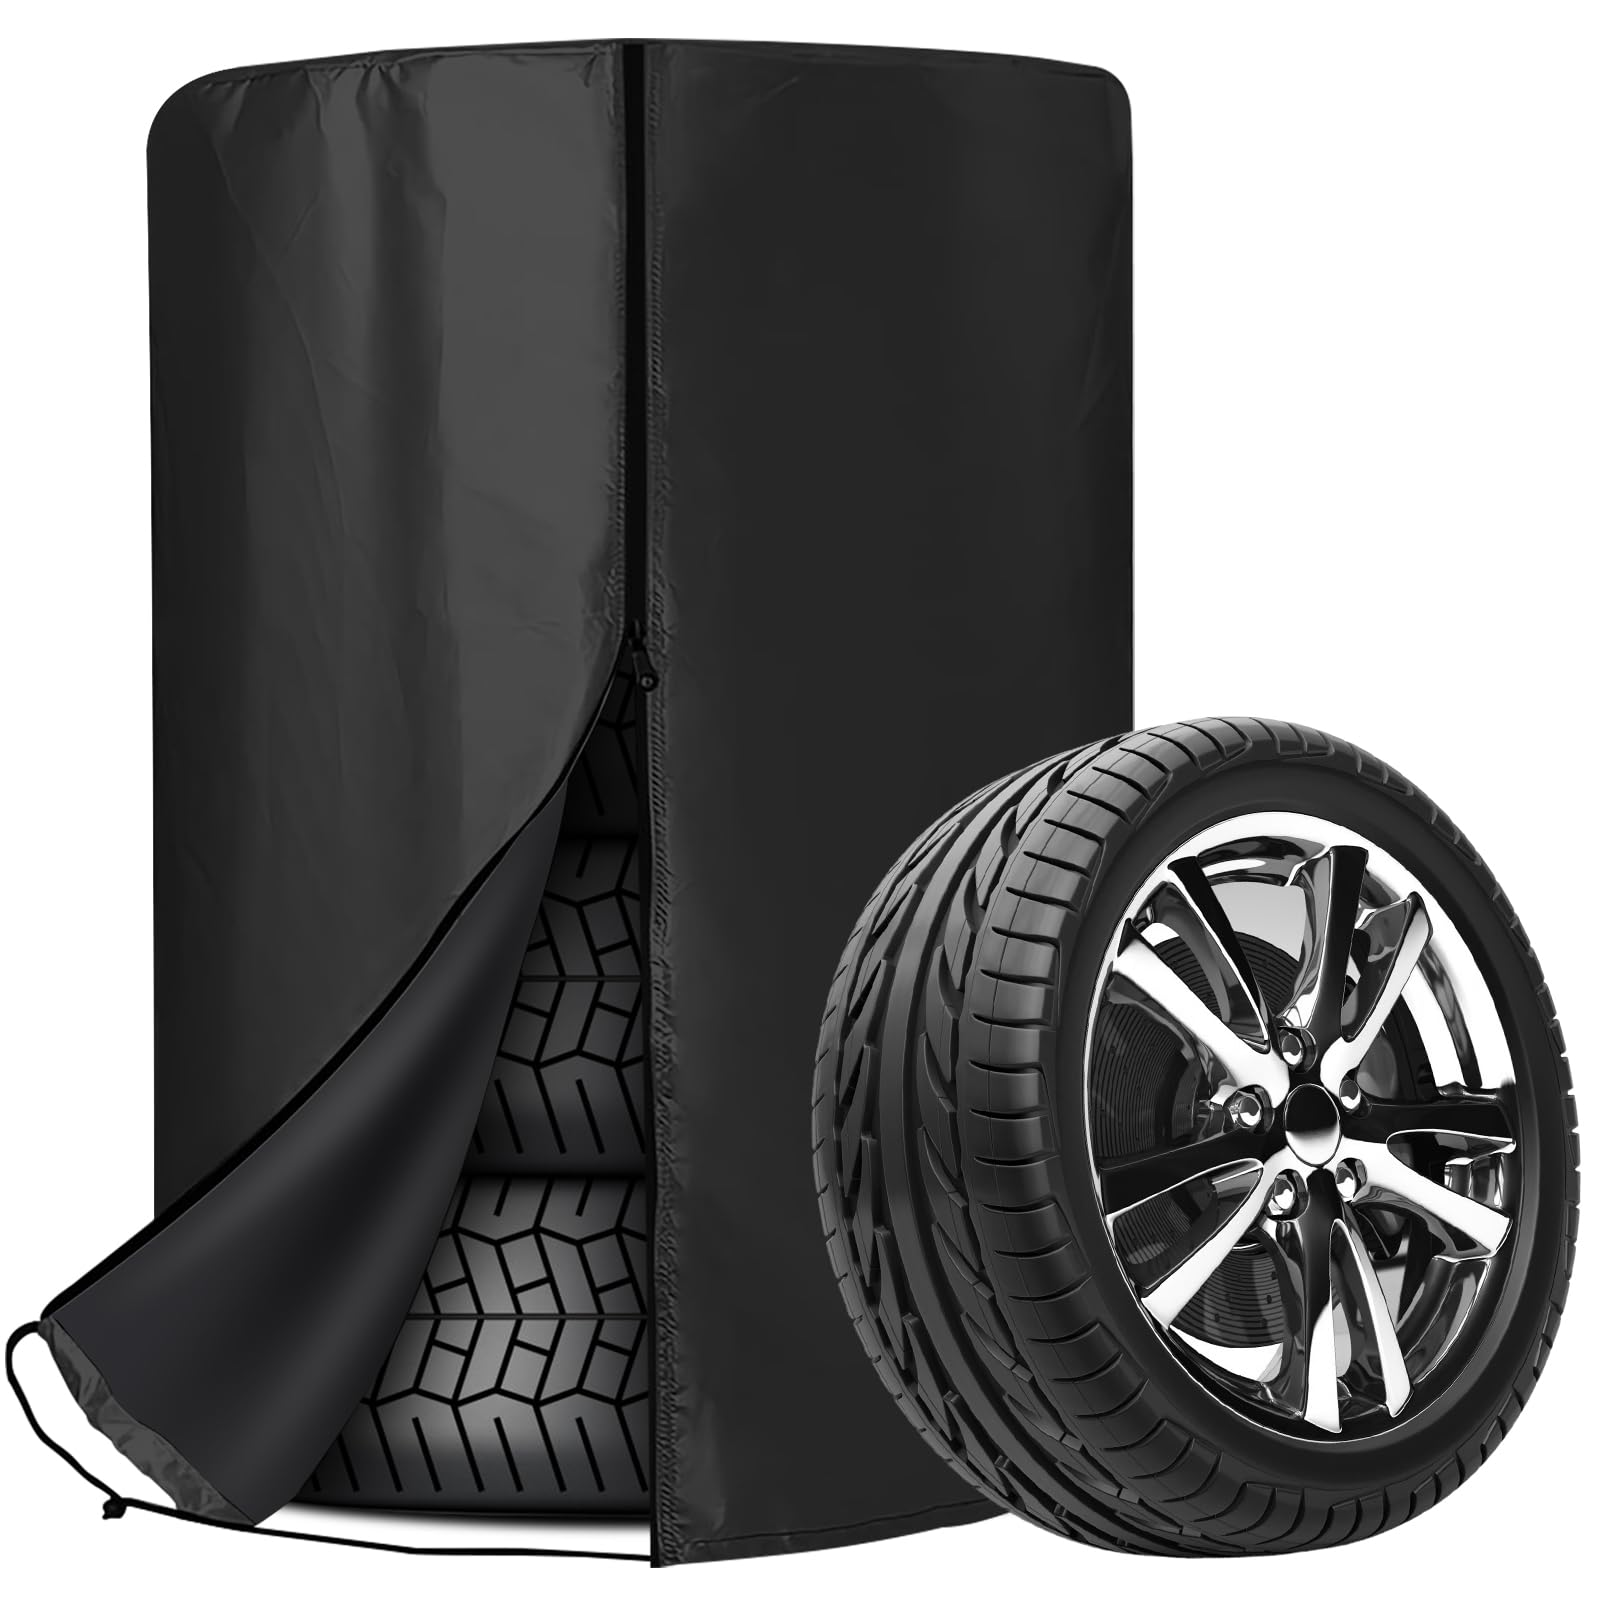 Aicharynic Universale Reifenabdeckung: 80 * 120 cm Auto Reifenabdeckung, wasserdichte Staubdicht Reifenschutzhülle, Universale Reifentaschen mit Reißverschluss für 4 Reifen (Schwarz) von Aicharynic